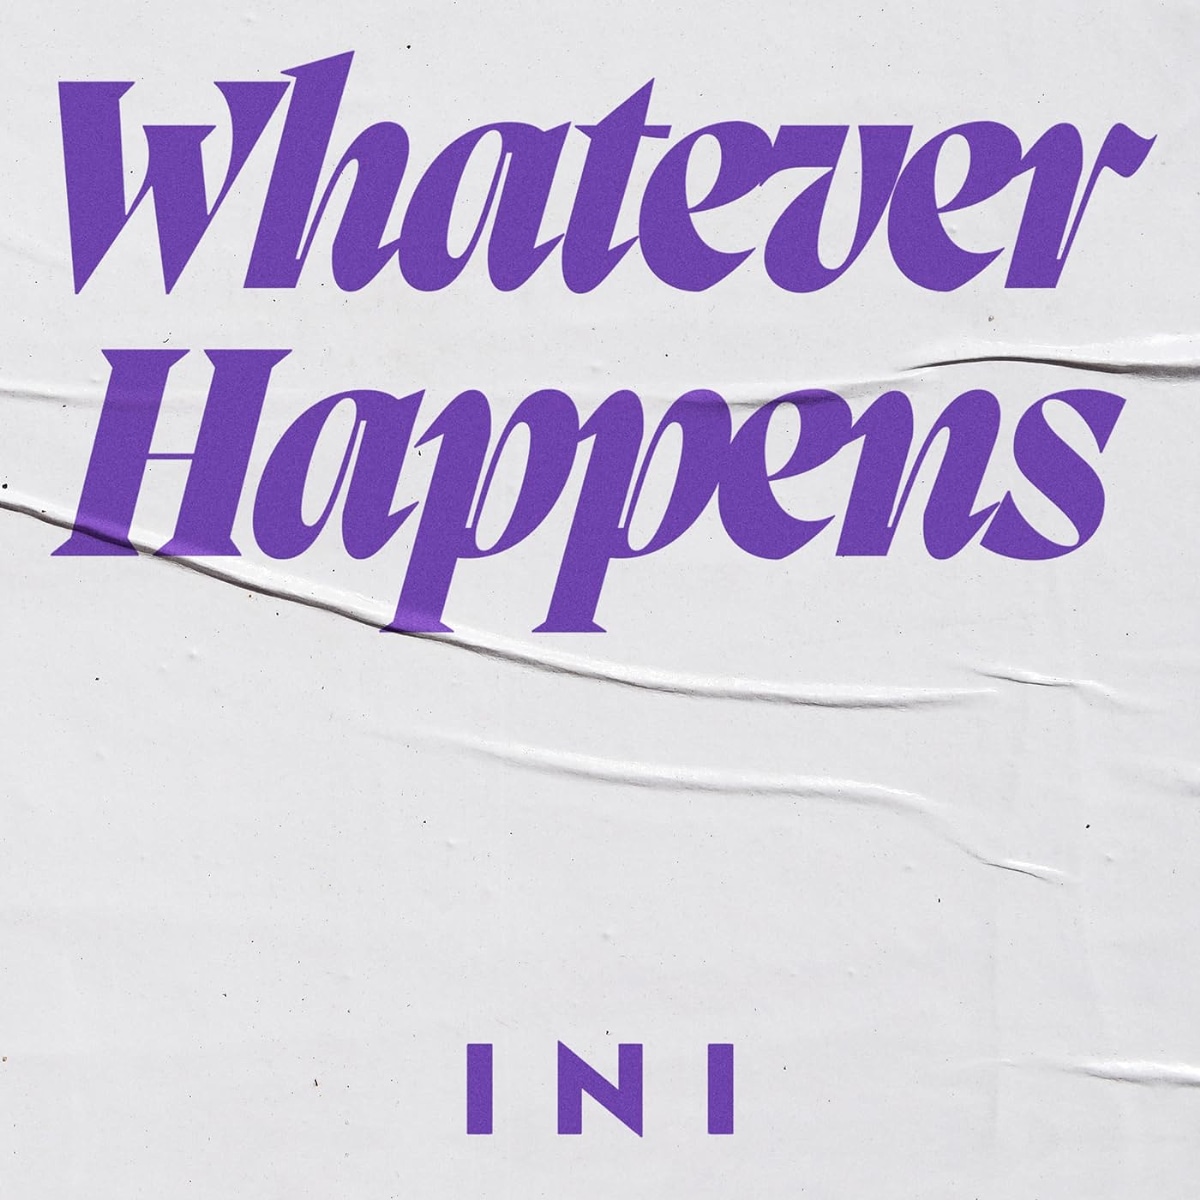 Whatever Happens - Osanime